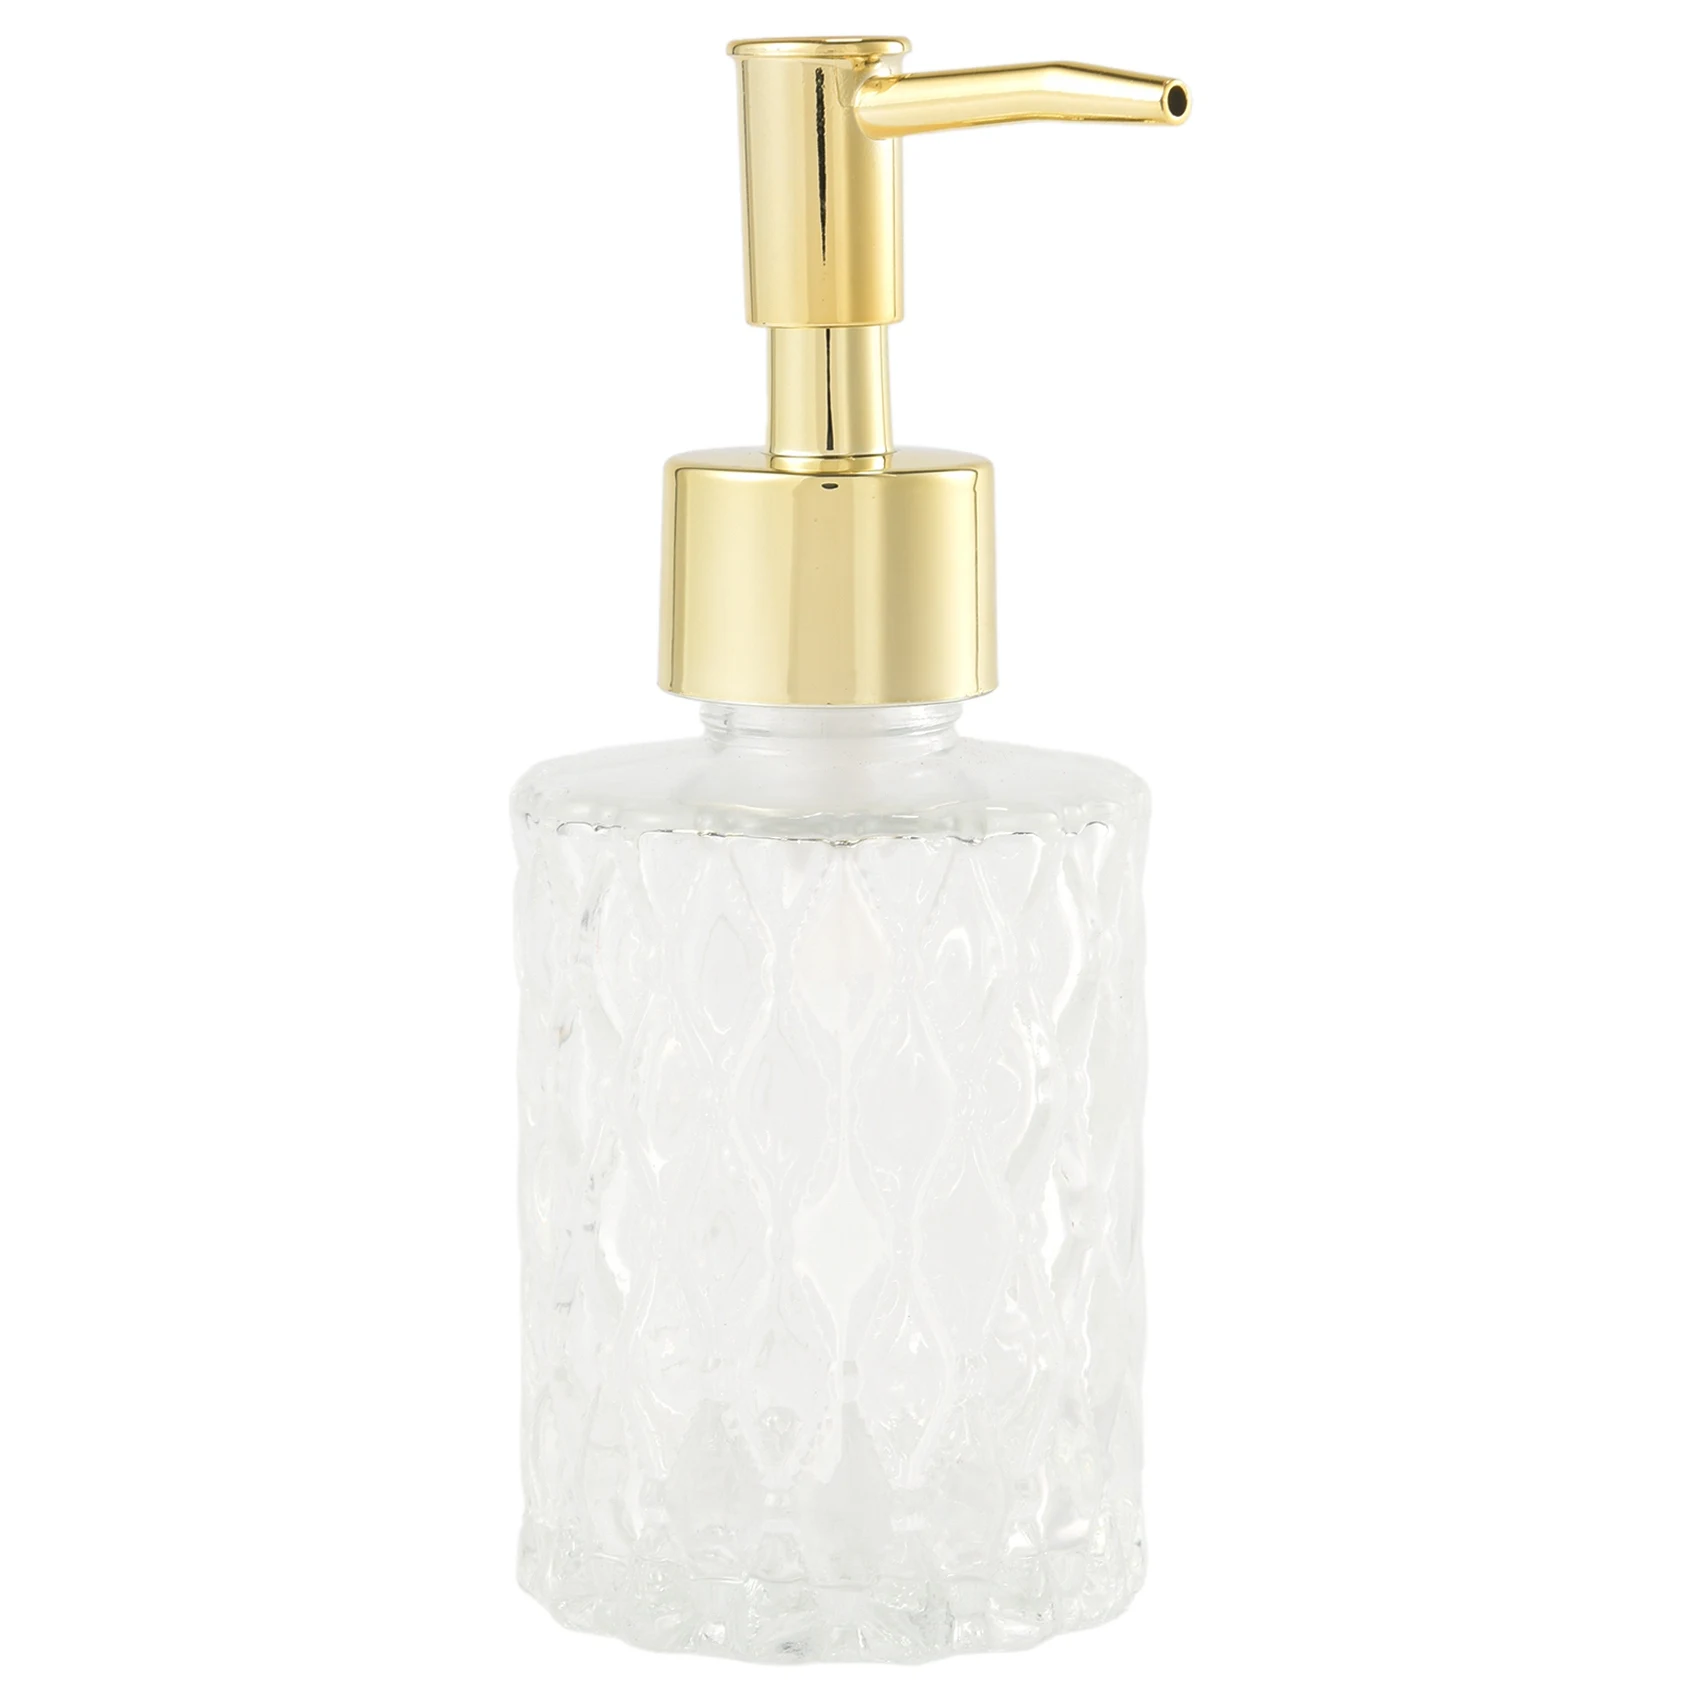 Универсальный Дозатор для мыла Mesa, легко моющийся Стеклянный дозатор для мыла, идеально подходящий для кухни и ванной комнаты (Золотой)